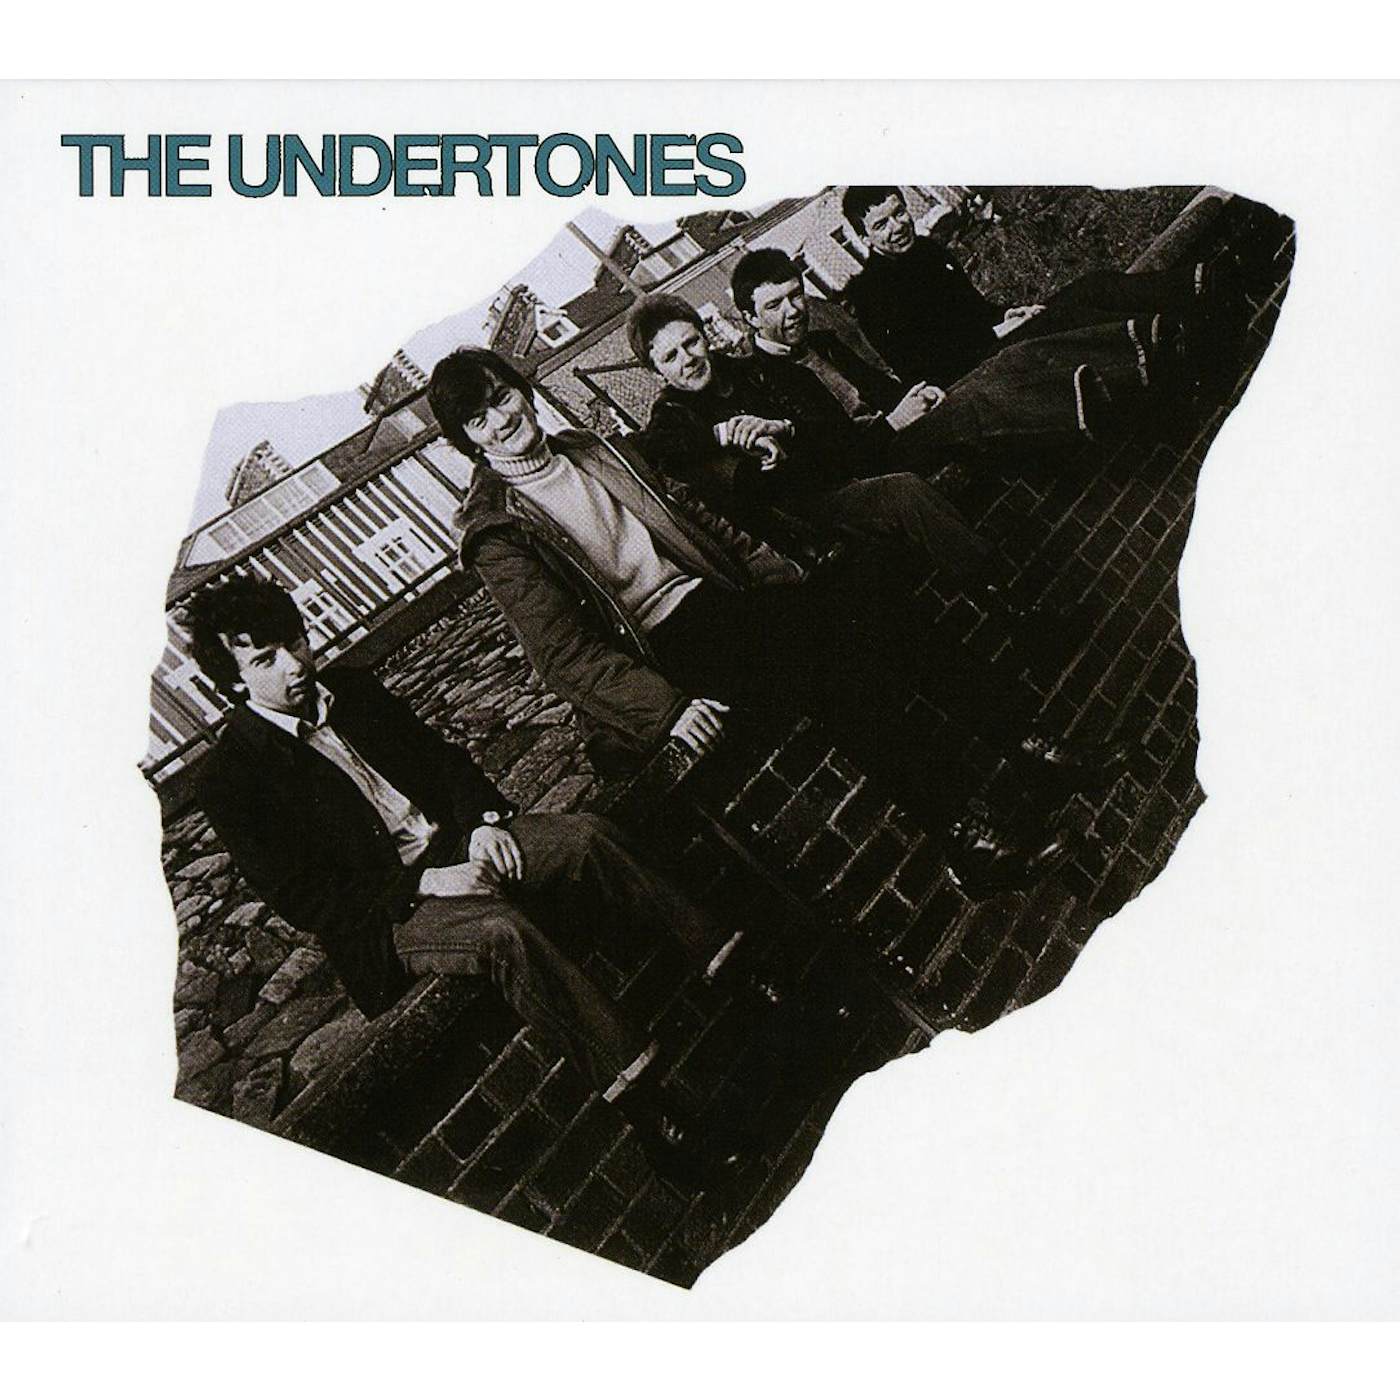 The Undertones CD